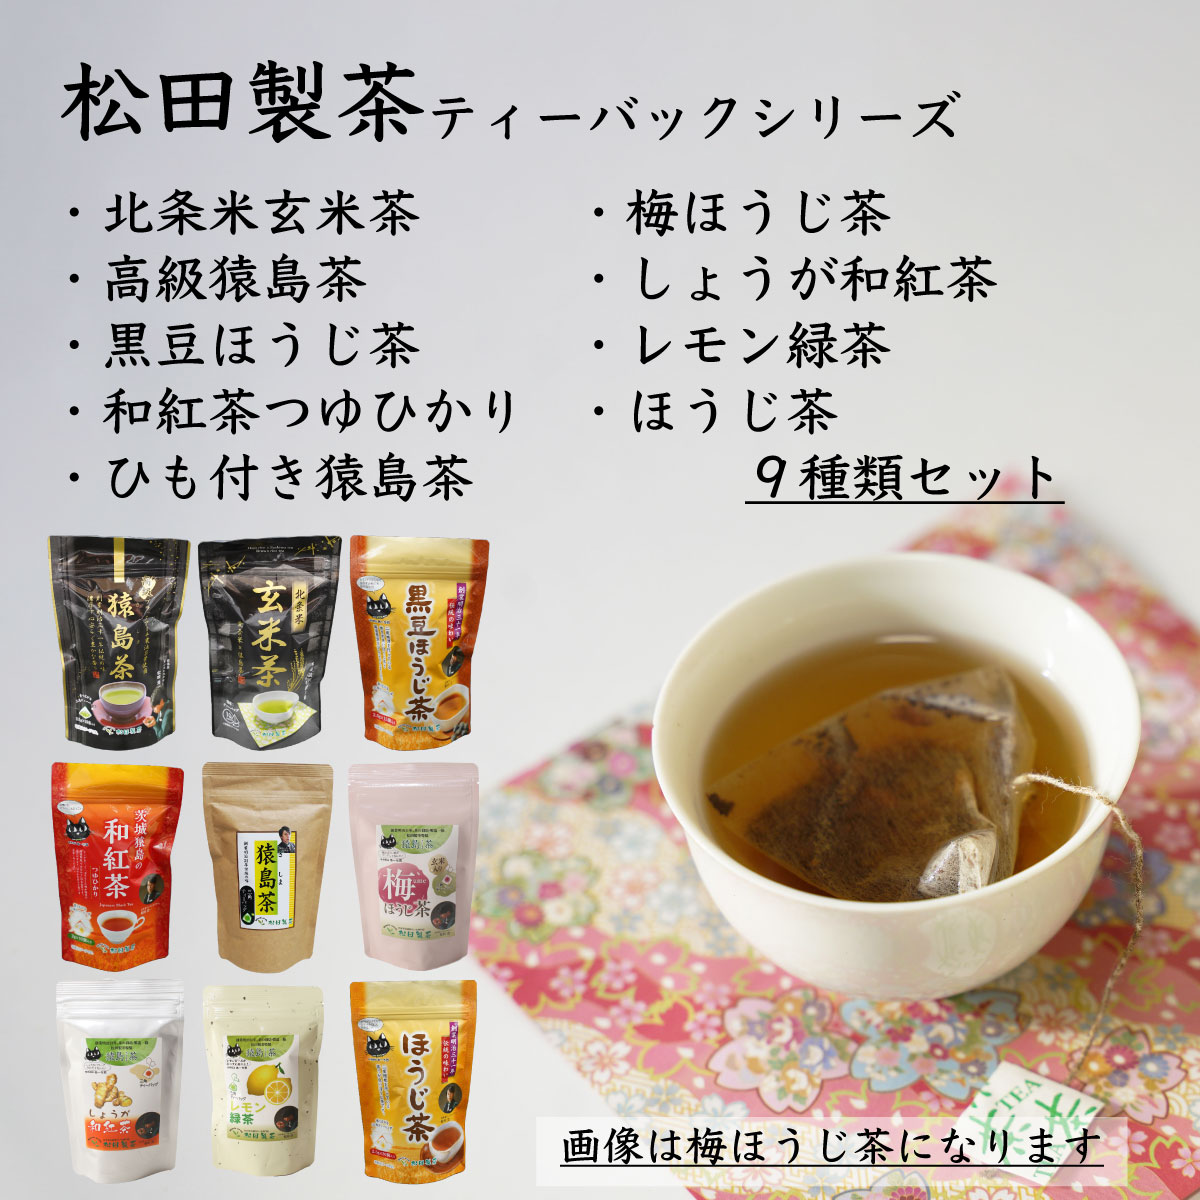 松田製茶ティーバックシリーズ 9種類セット お茶 玄米茶 猿島茶 さしま茶 ほうじ茶 紅茶 緑茶 詰め合わせ おいしい ティーバック ティーパック [AF087ya]